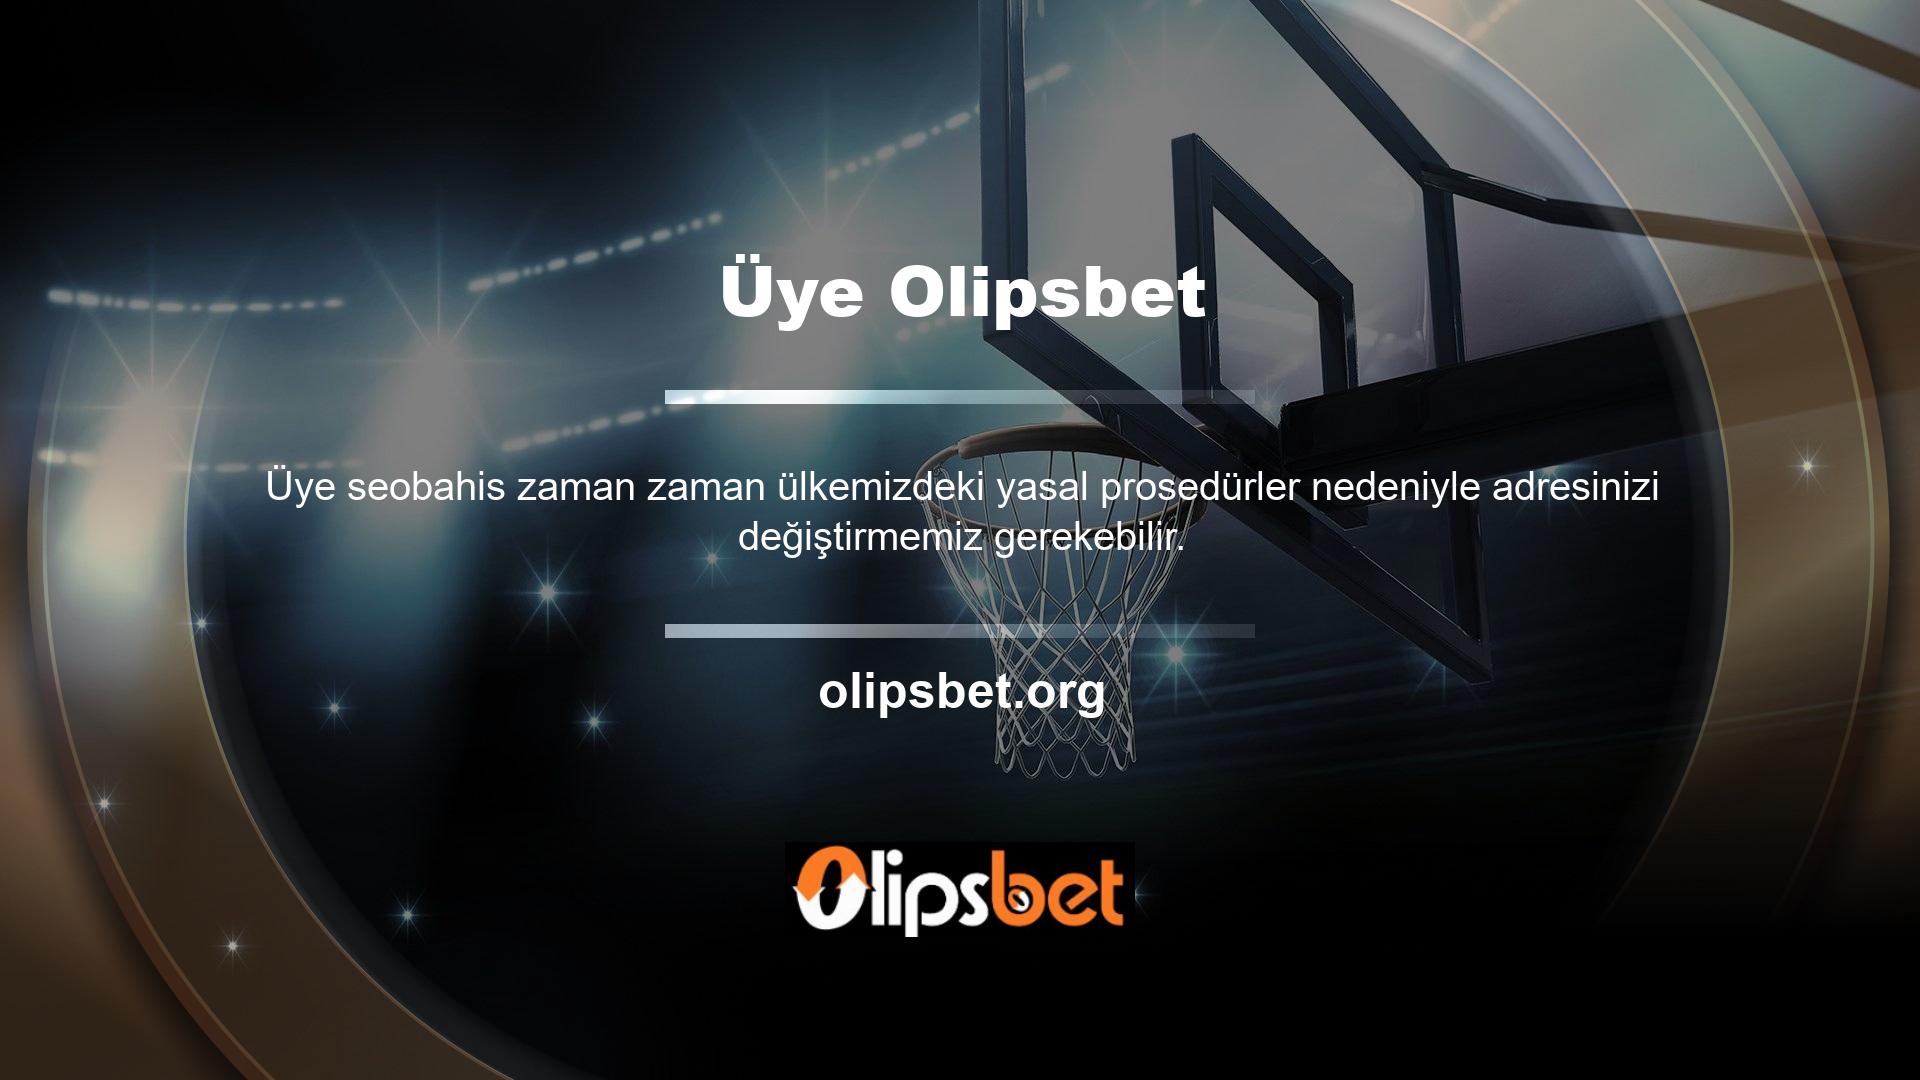 Olipsbet adresinin değişmesi durumunda yeni Olipsbet giriş adresini en kısa sürede sitemizde yayınlayacağız